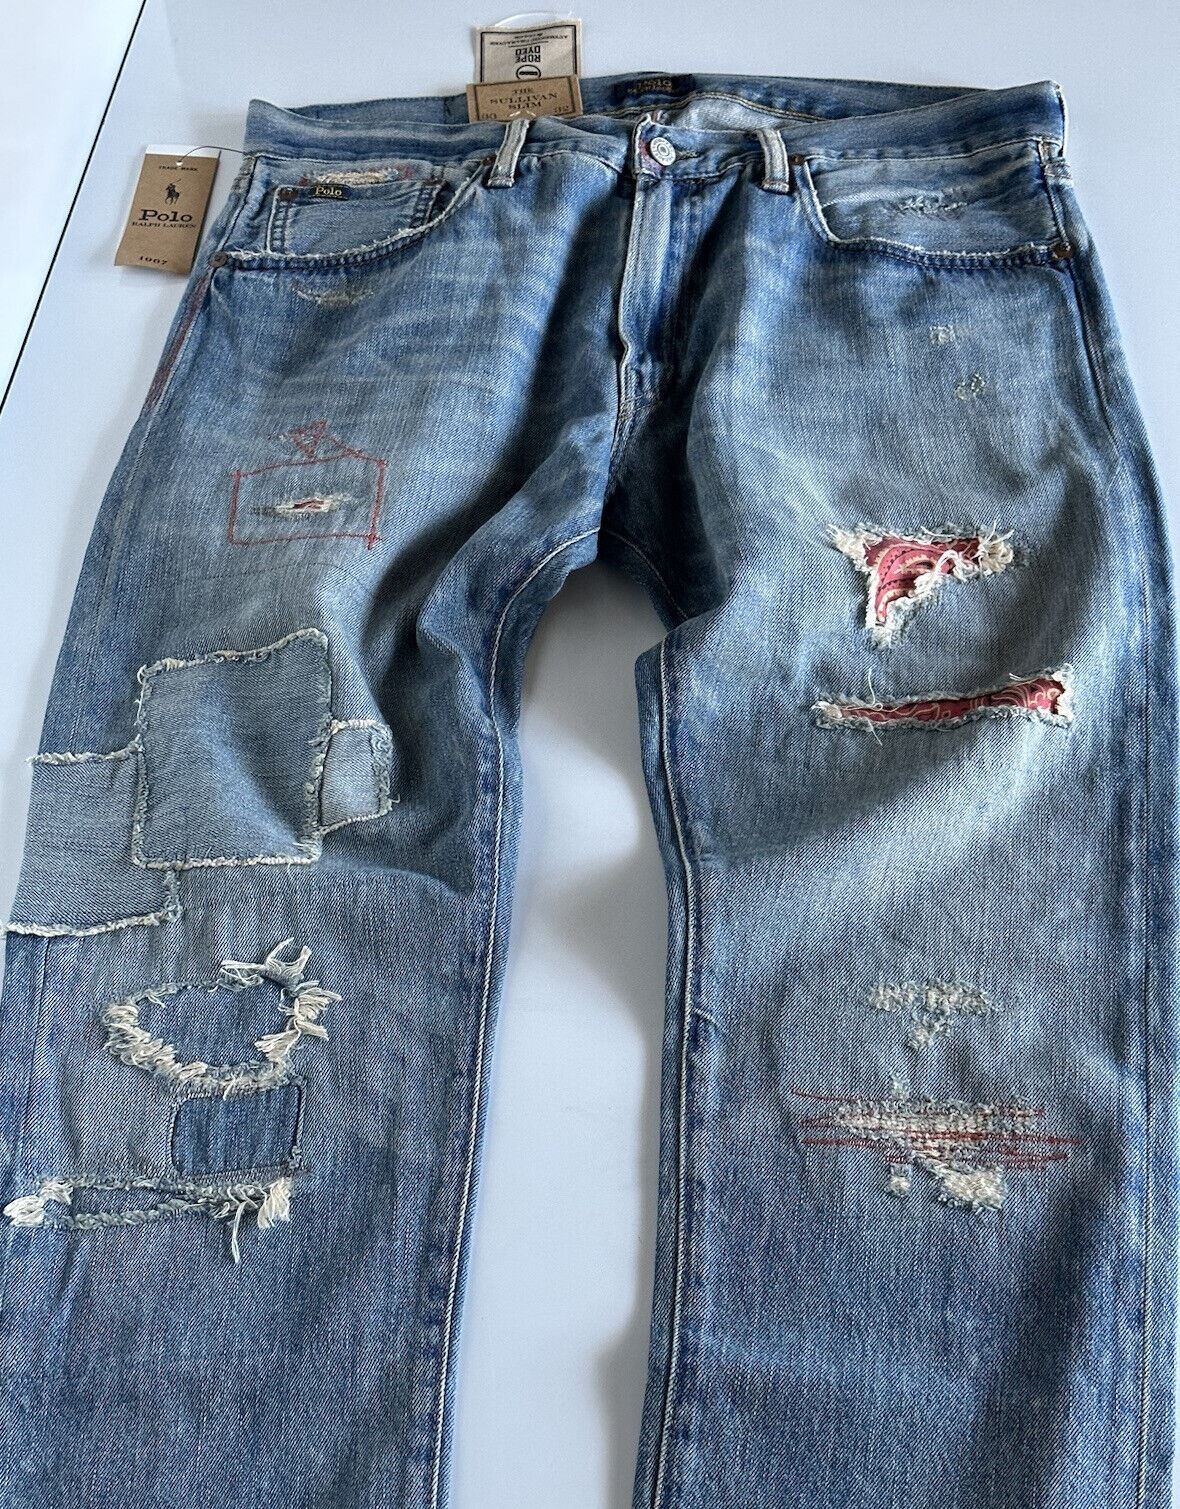 СЗТ 188 долларов США Polo Ralph Lauren The Sullivan Узкие синие джинсы 33/32